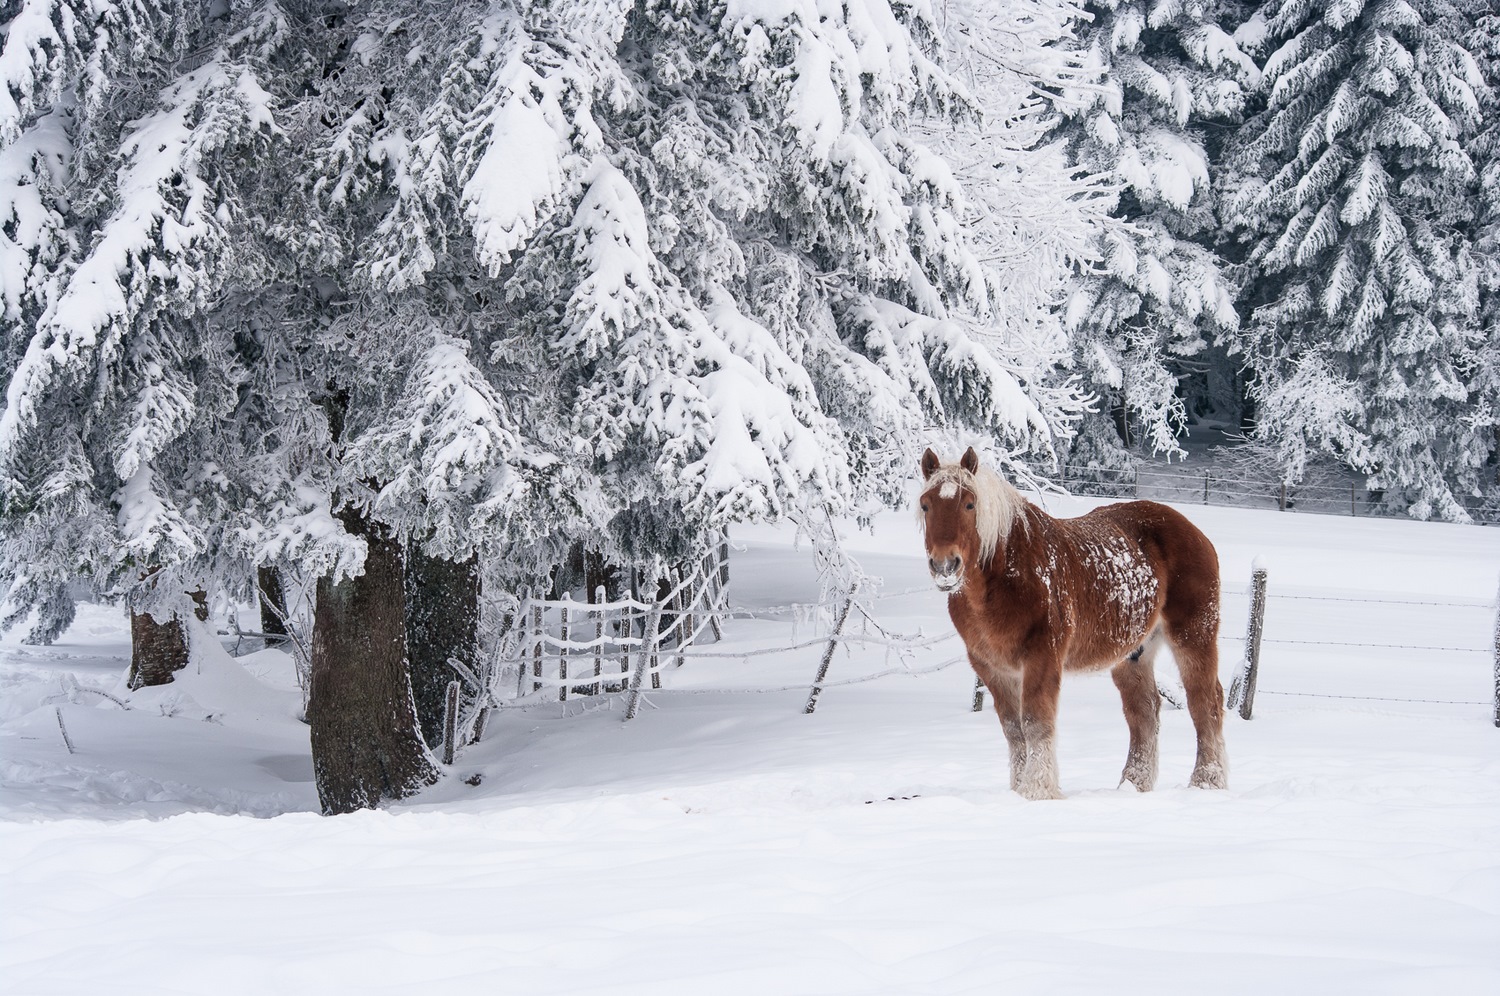 cheval dans la neige, stage photo en chartreuse en hiver